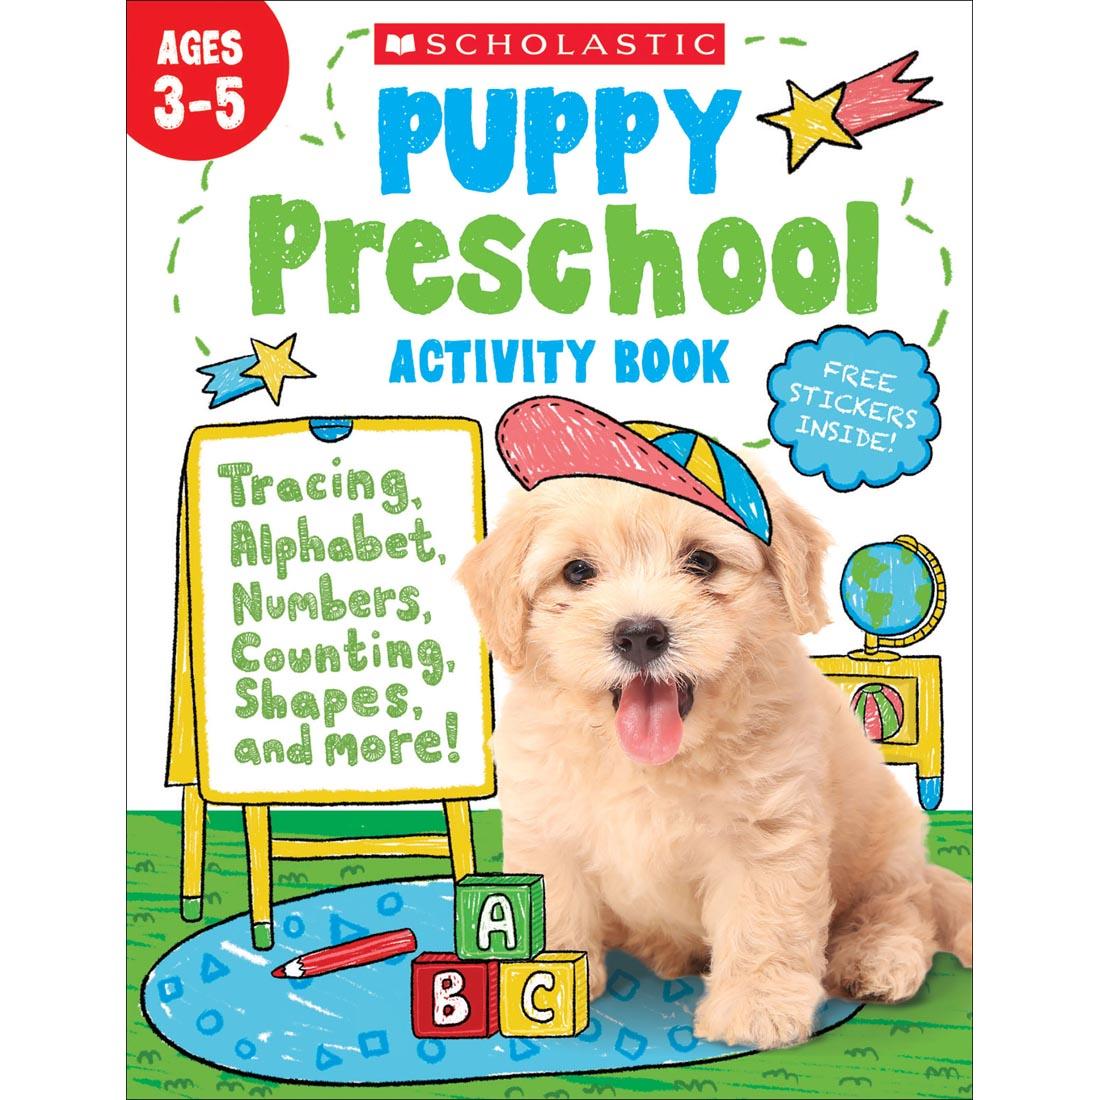 Puppy Preschool Activity Book by Scholastic